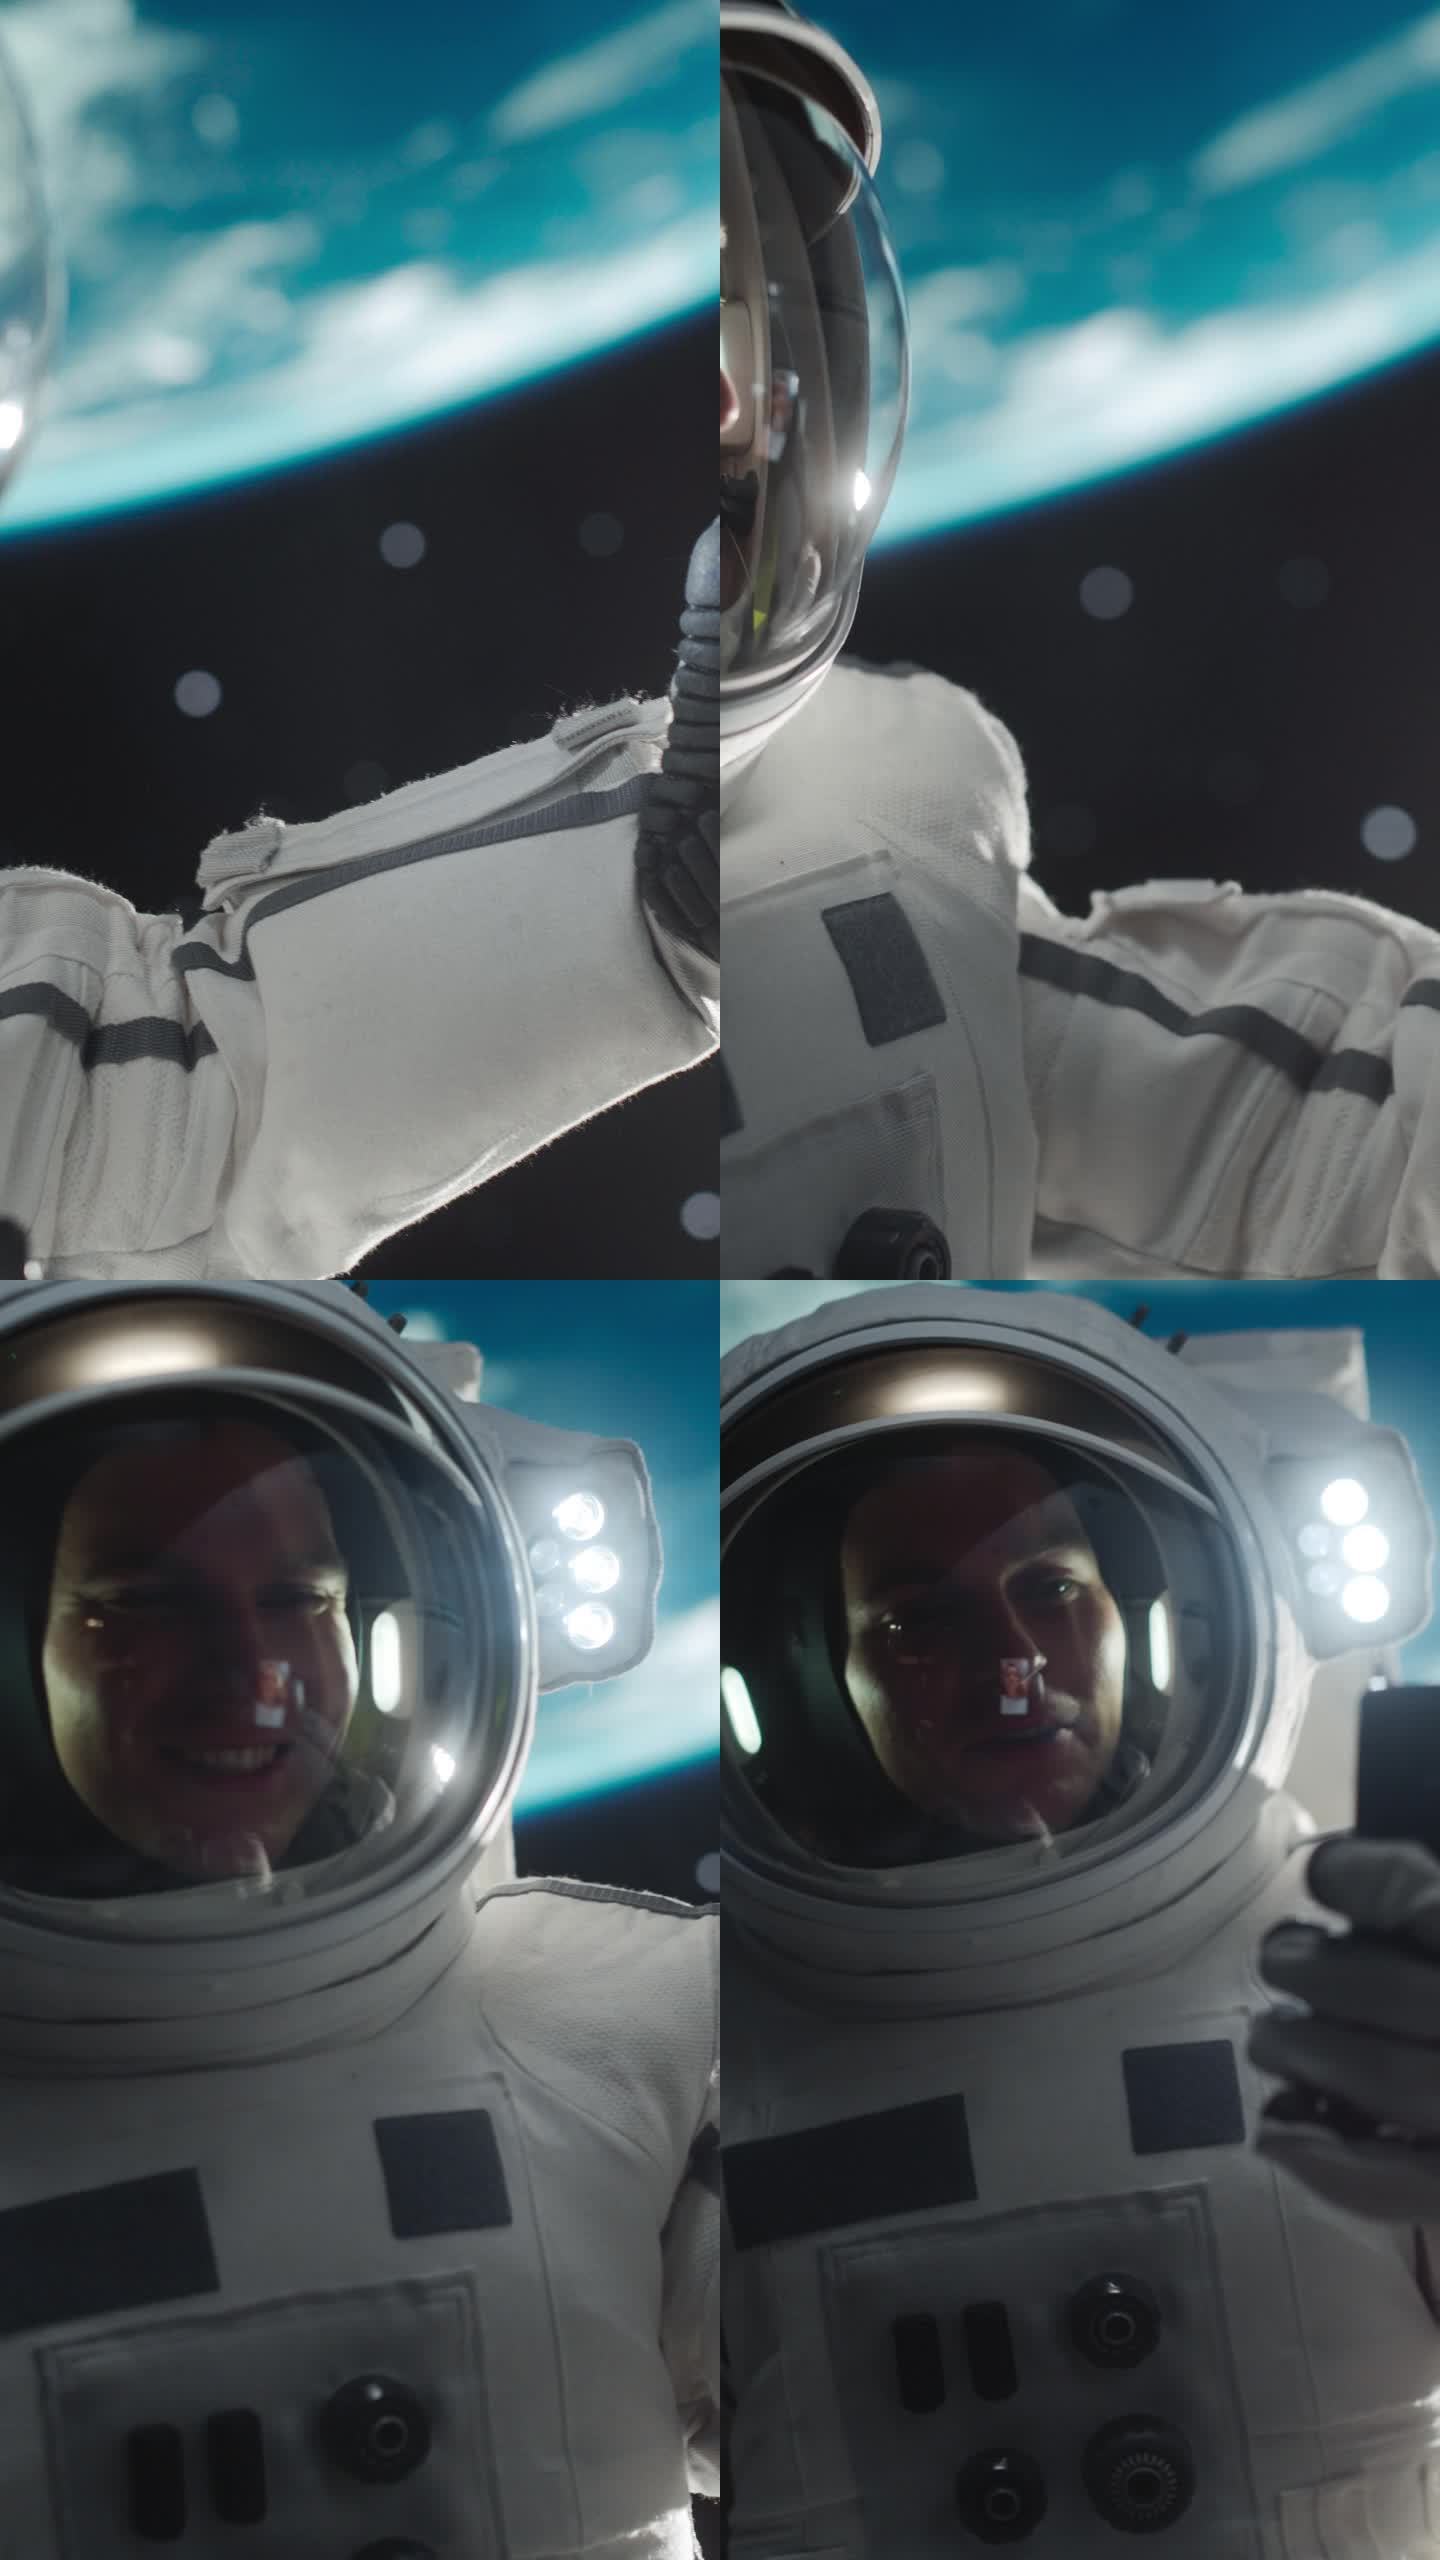 垂直屏幕:宇航员在零重力状态下漂浮在太空中。宇航员与一位来自地球的年轻女性进行视频通话。工程师在轨道